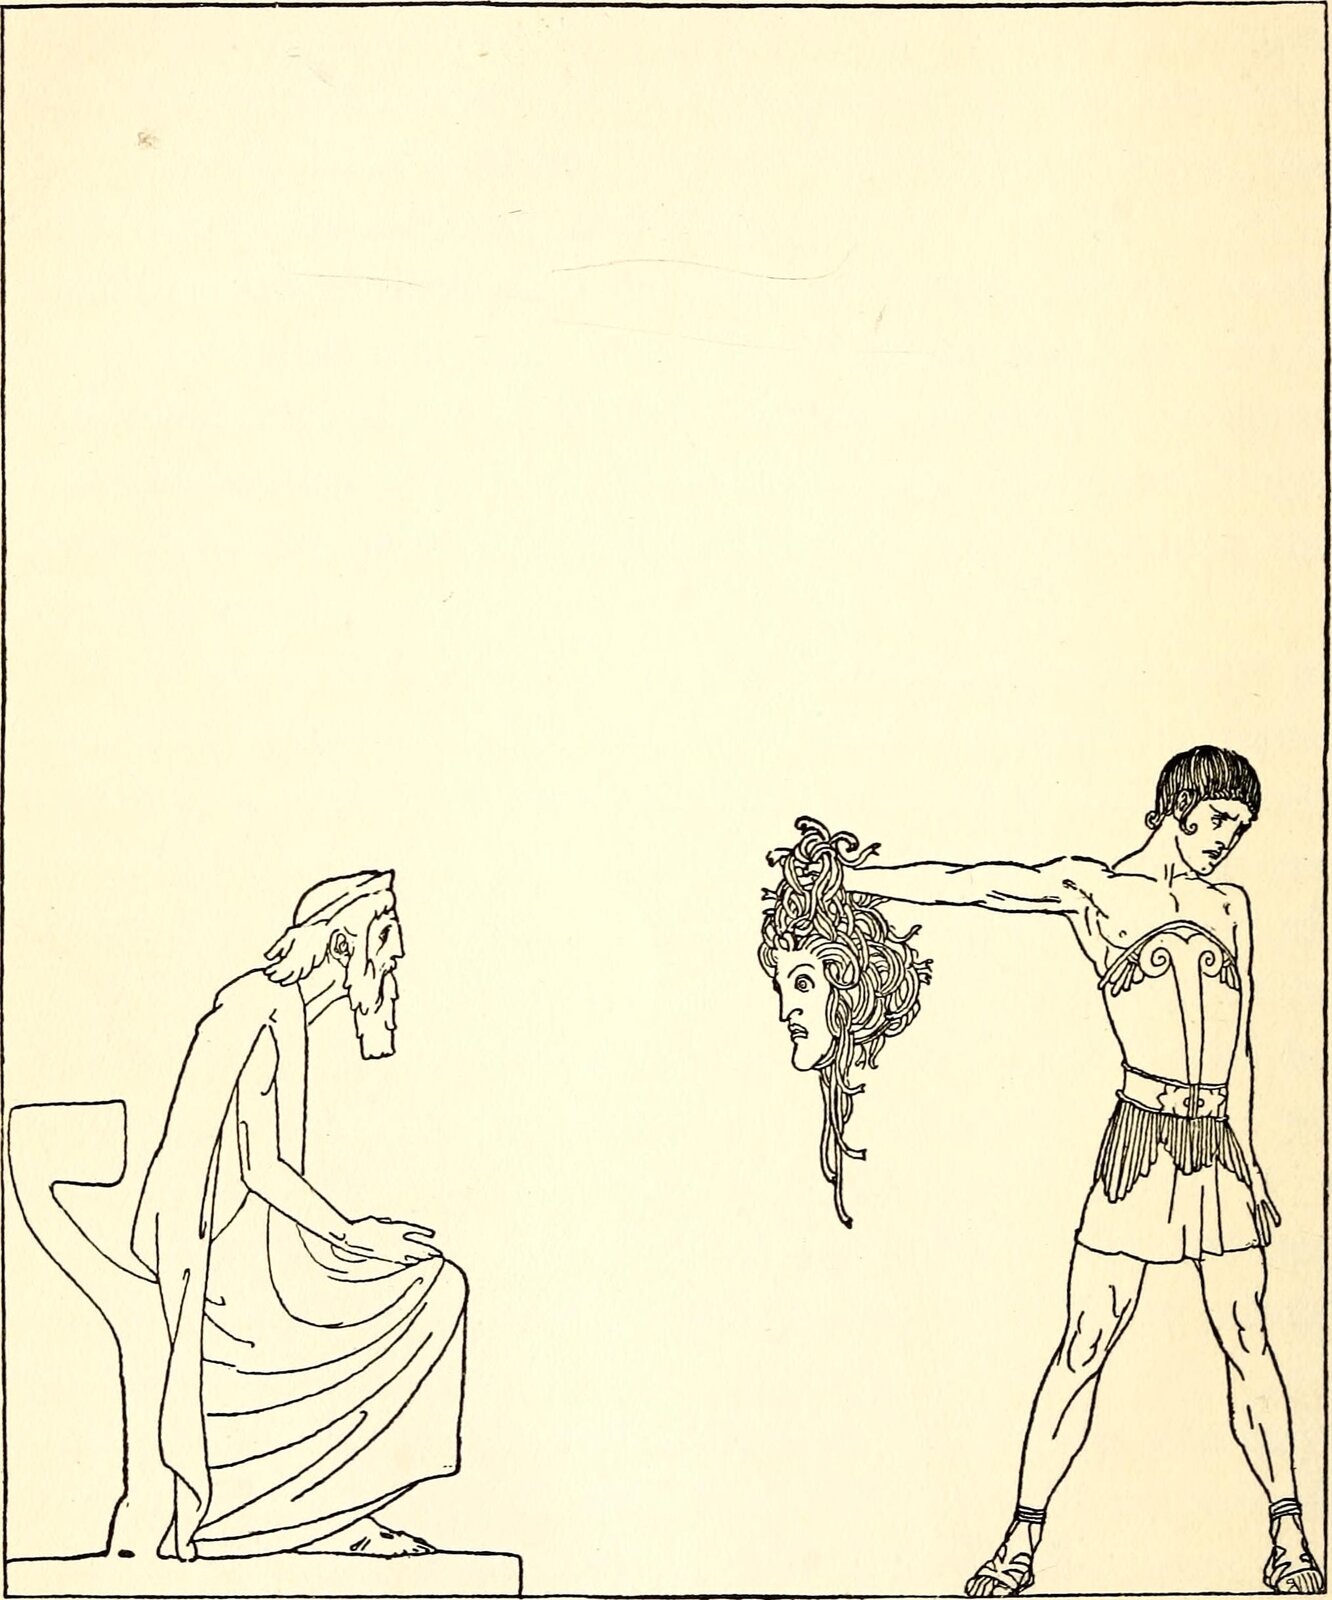 Ilustracja przedstawia pracę Willego Pogany pod tytułem „Perseusz i Polidektes”. Ilustracja jest czarno-biała i przedstawia wręczenie głowy Meduzy przez Perseusza dla Polidektesa, który siedzi na tronie. Perseusz z obrzydzeniem odwraca głowę. Perseusz ubrany jest w zbroję, zaś Polidektes to starszy mężczyzna ubrany w szaty.